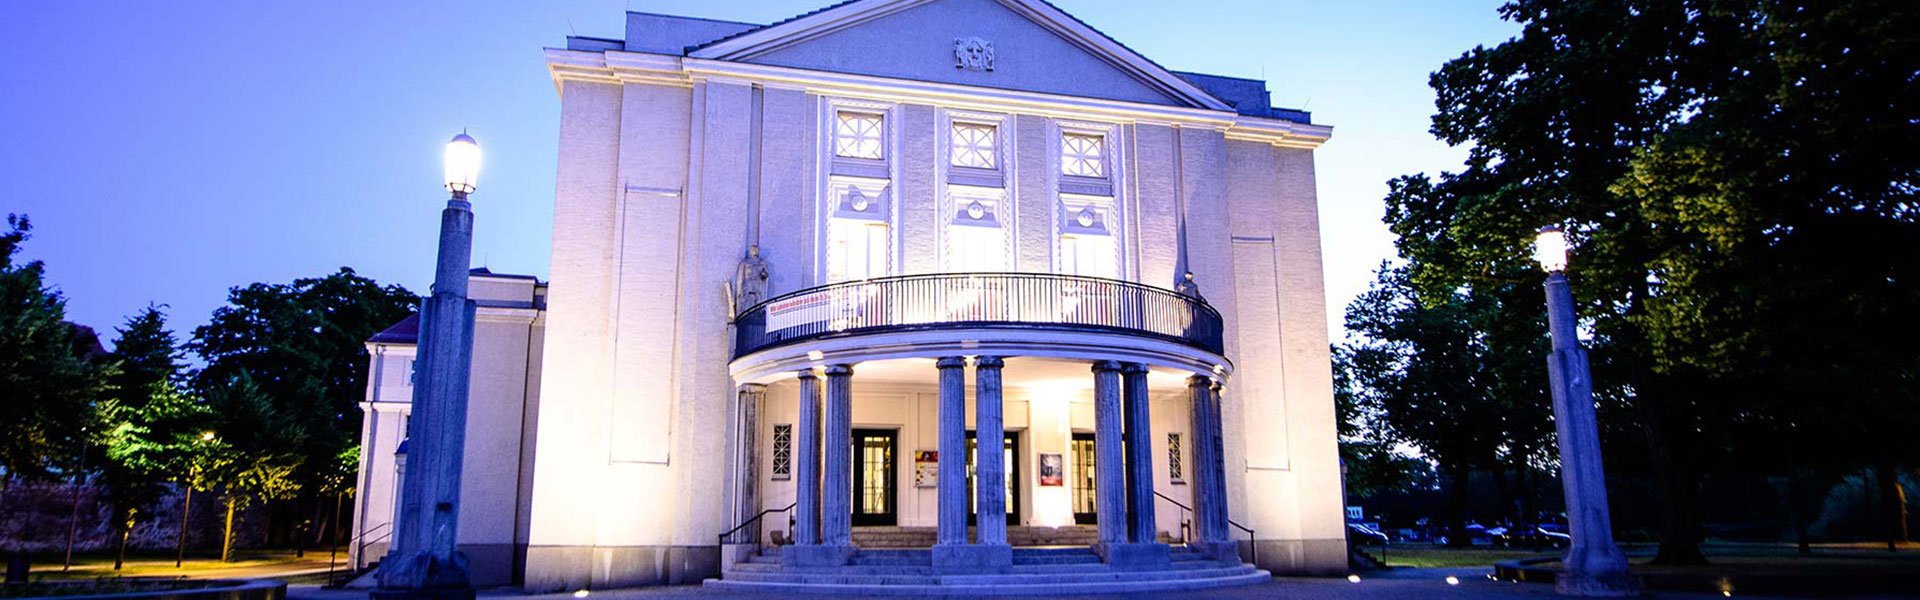 Theatersaal Putbus